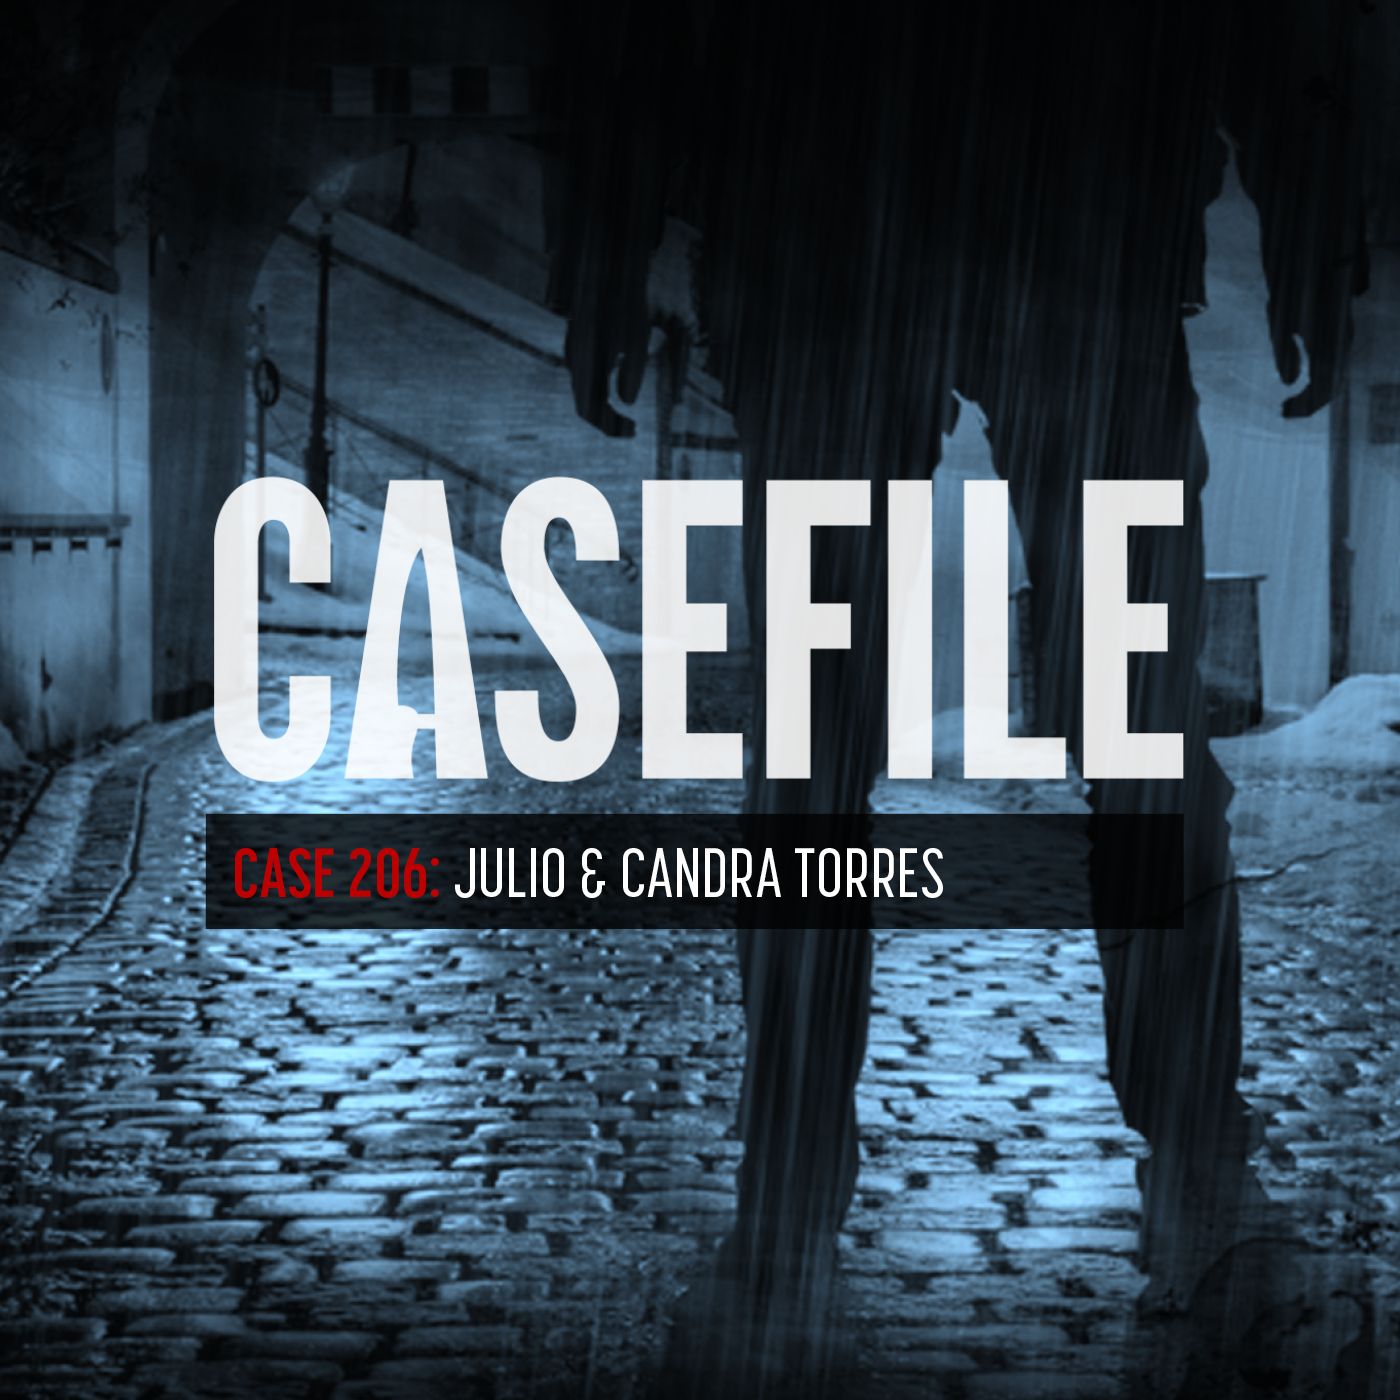 Case 206: Julio & Candra Torres